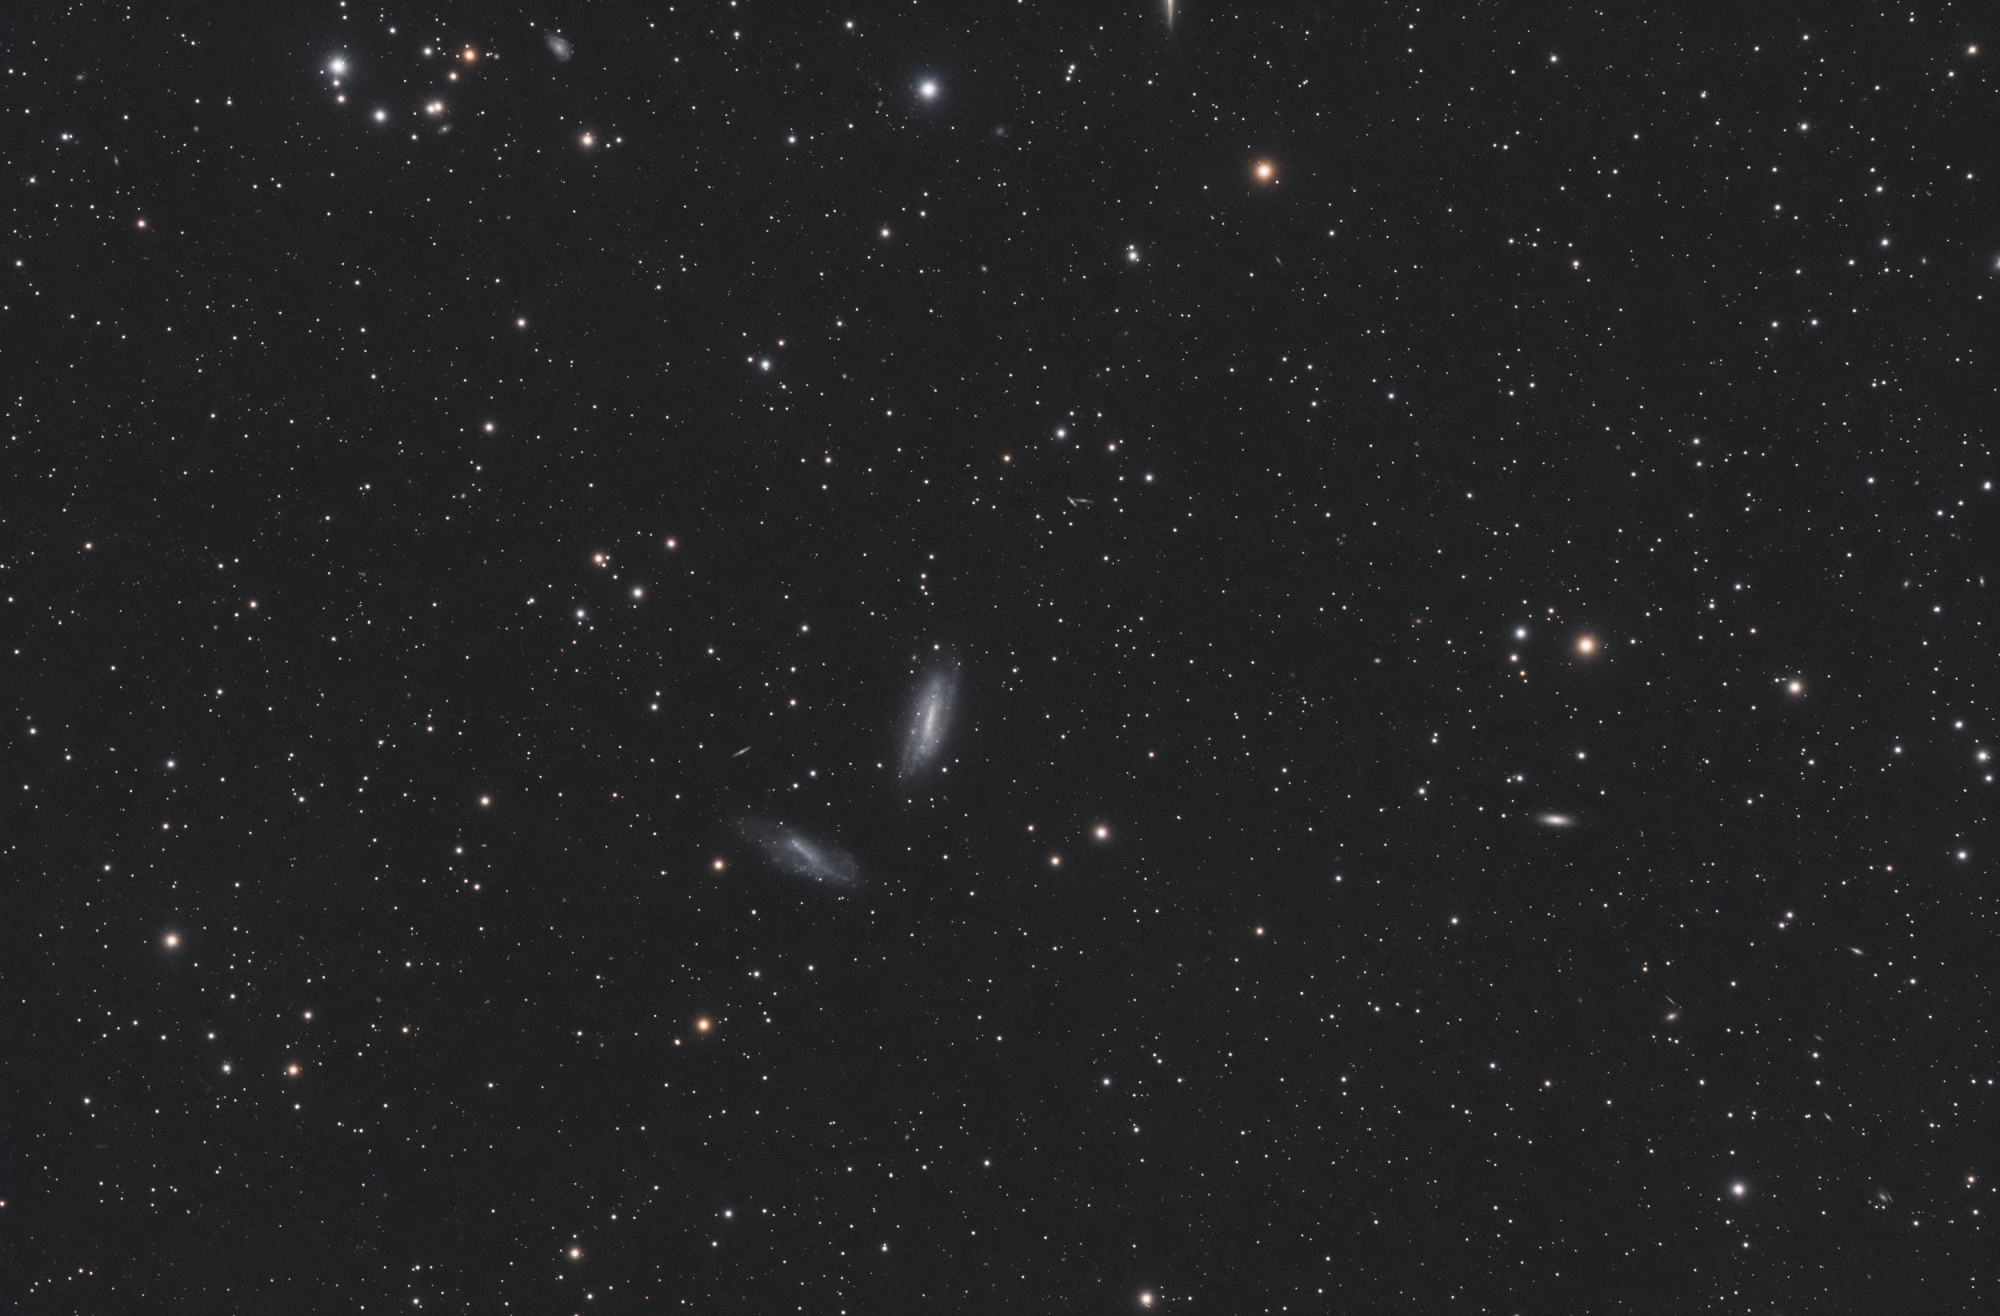 NGC 672_SIRIL-iris-compil-cs5-3-FINAL-2-x.jpg